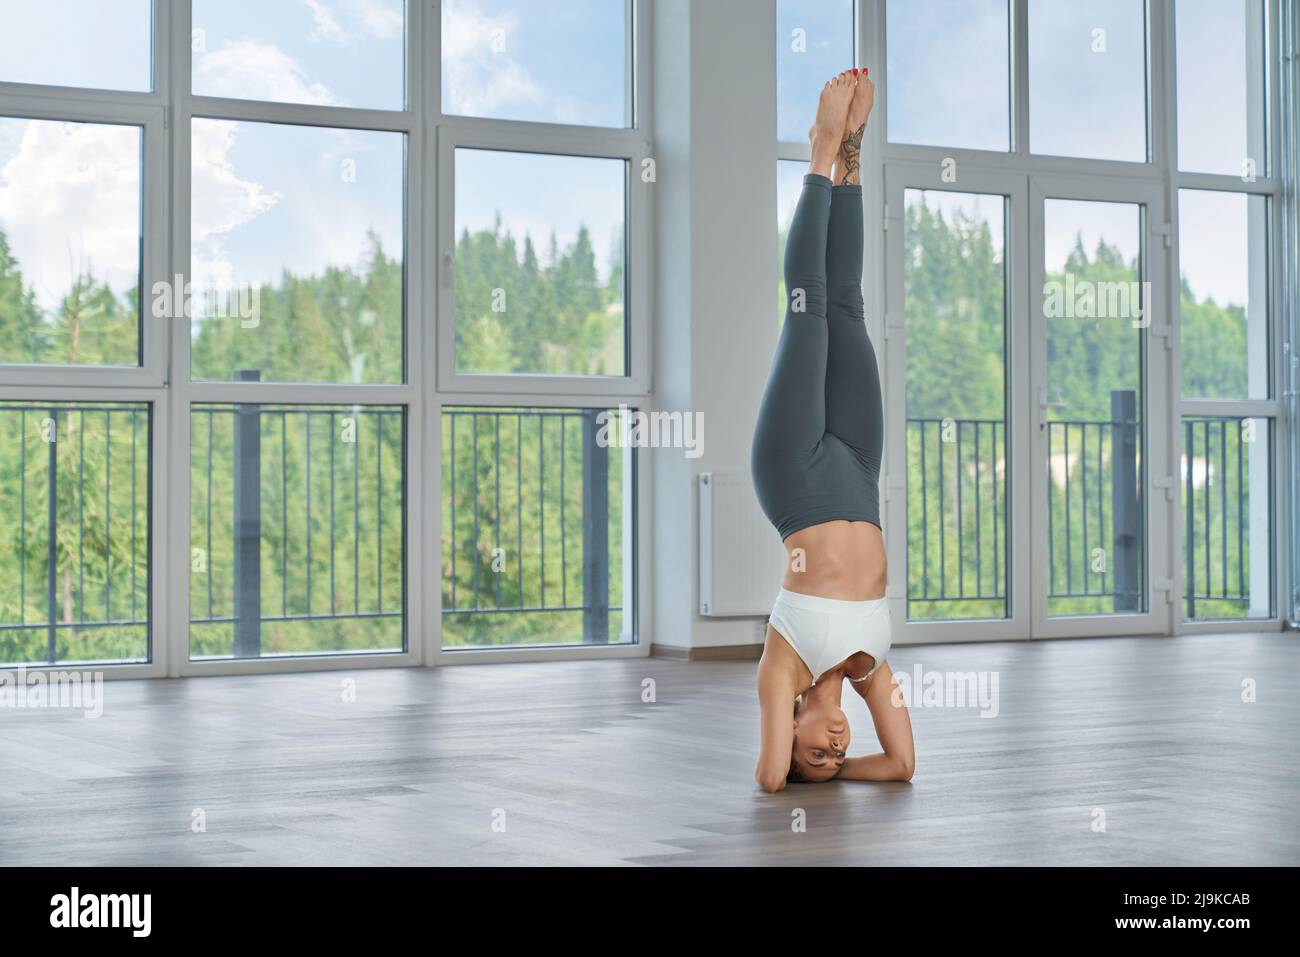 Gesunde, fit Frau beim Training am Handstand in der geräumigen Halle mit Panoramafenstern. Junge Dame in Sportkleidung praktiziert Yoga im Haus. Gesunde Lebensweise. Stockfoto